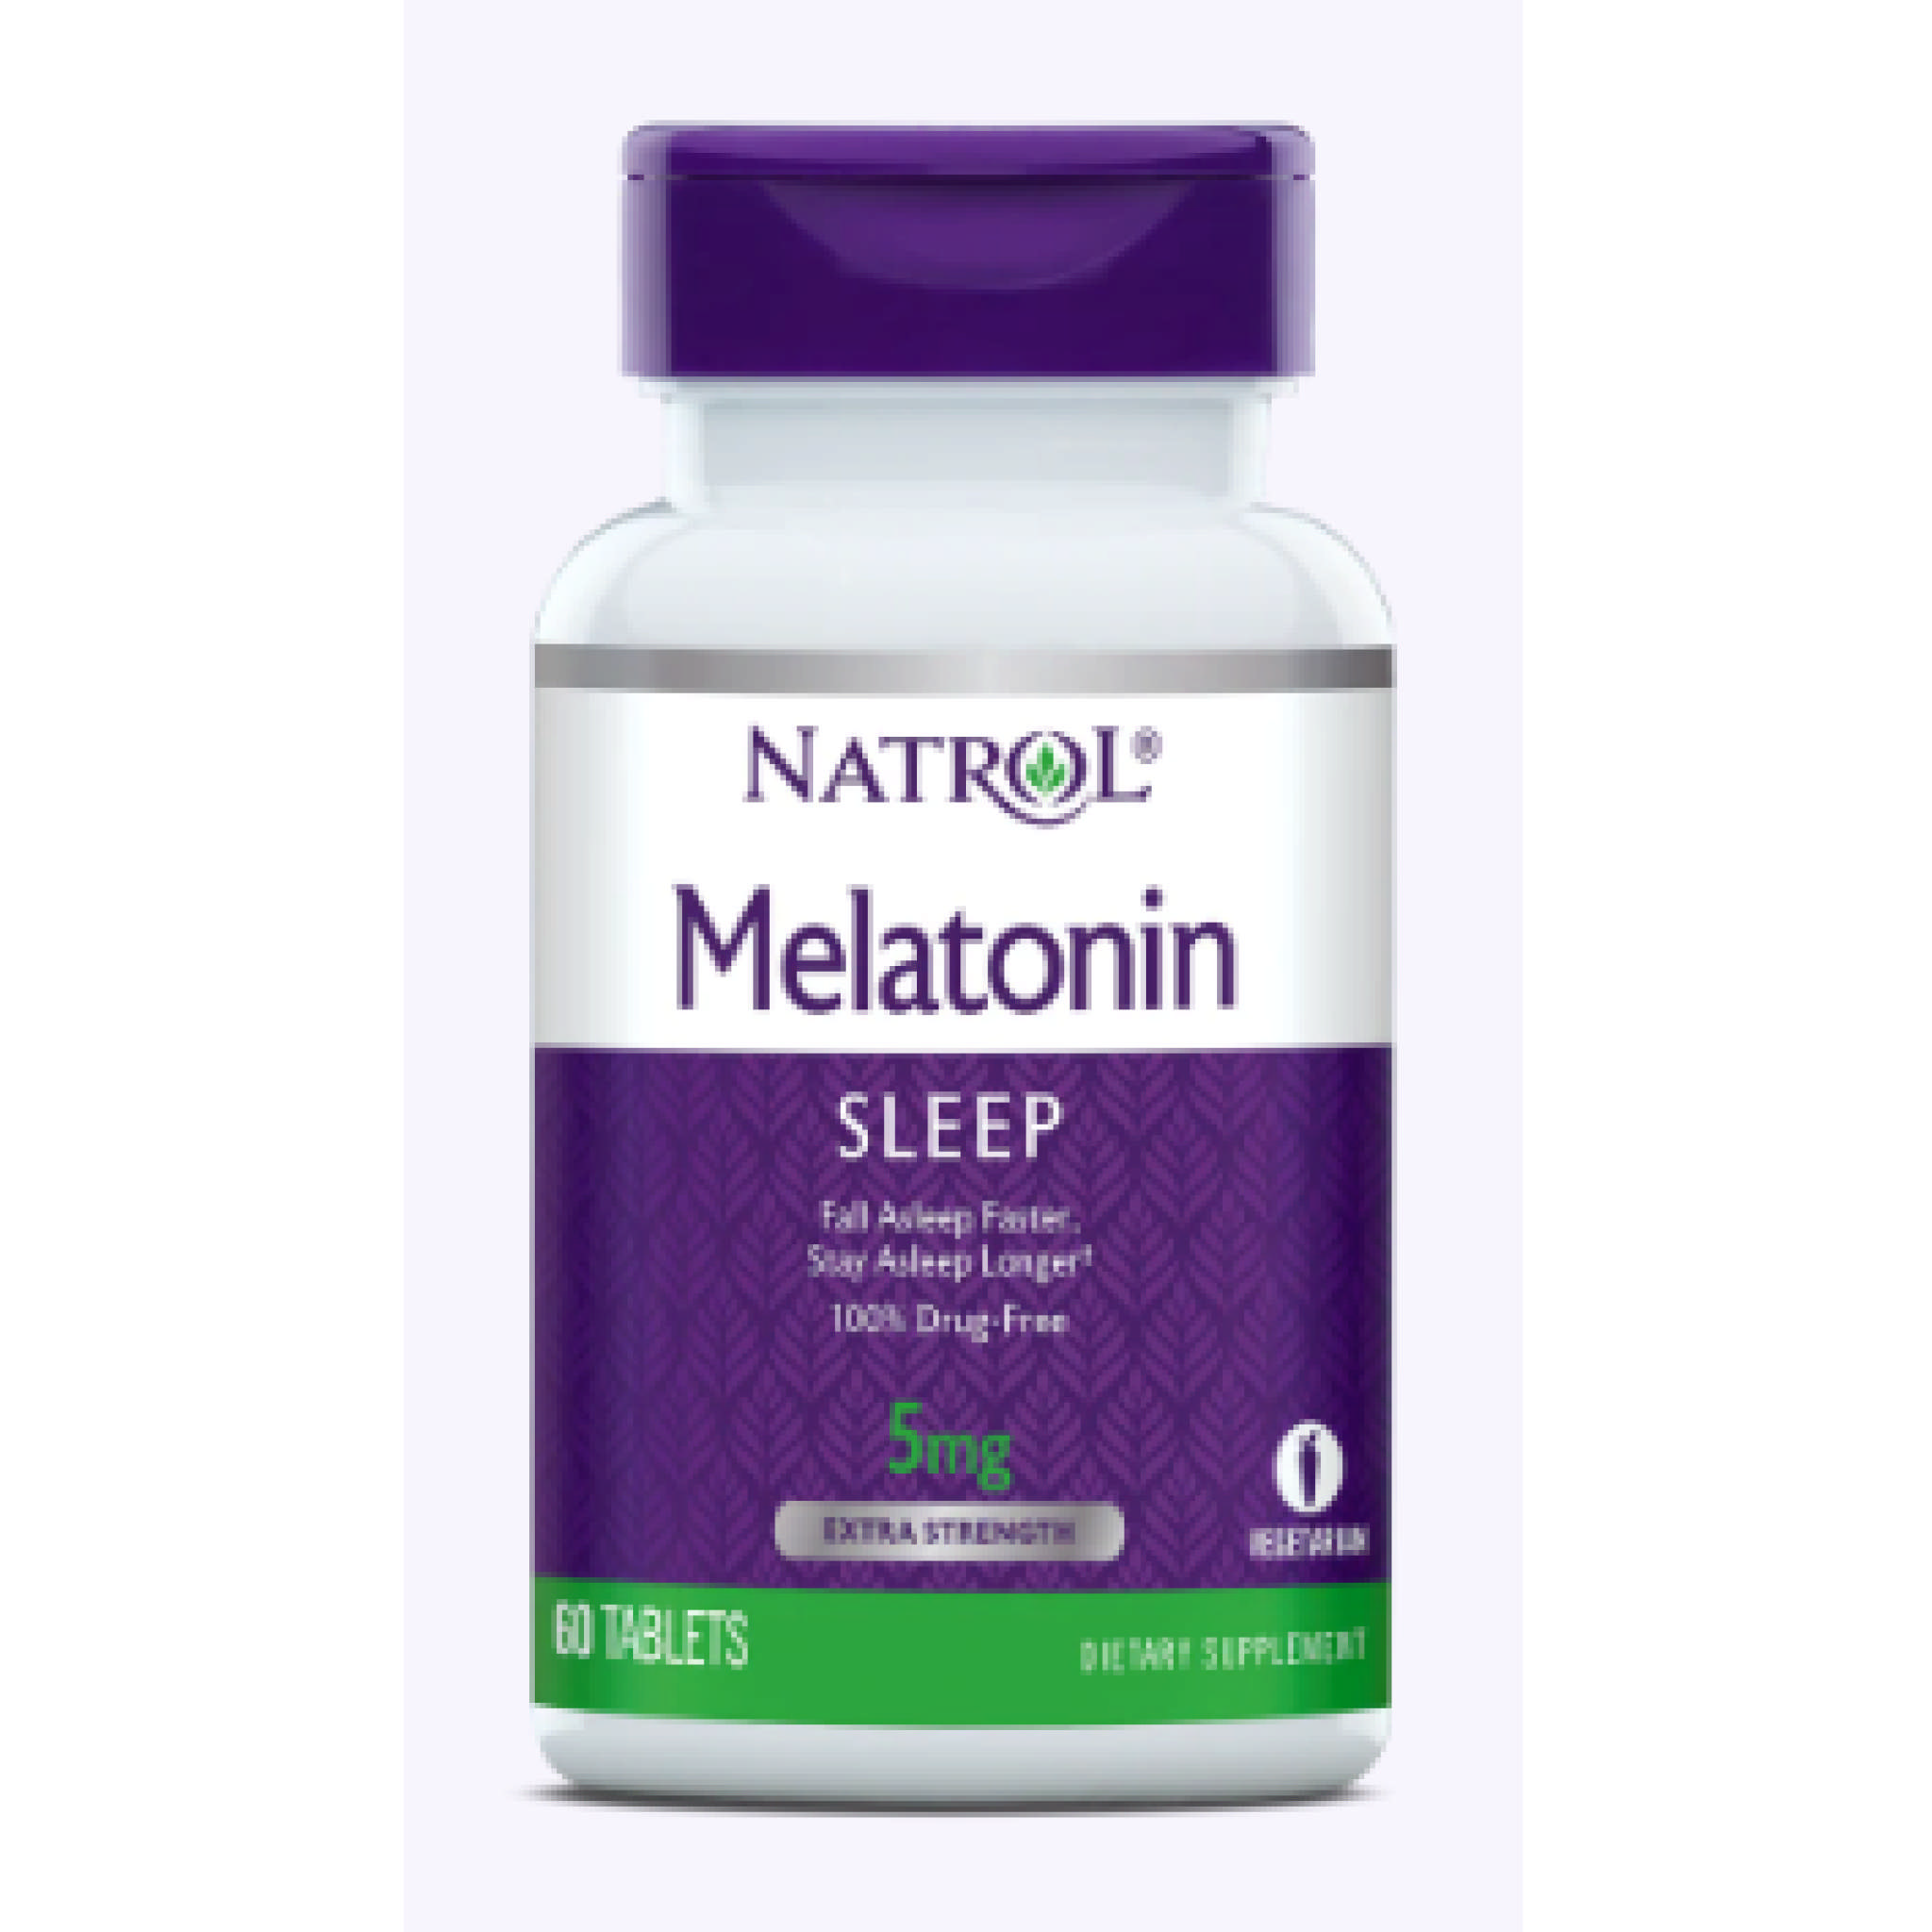 Natrol - Melatonin 5 mg